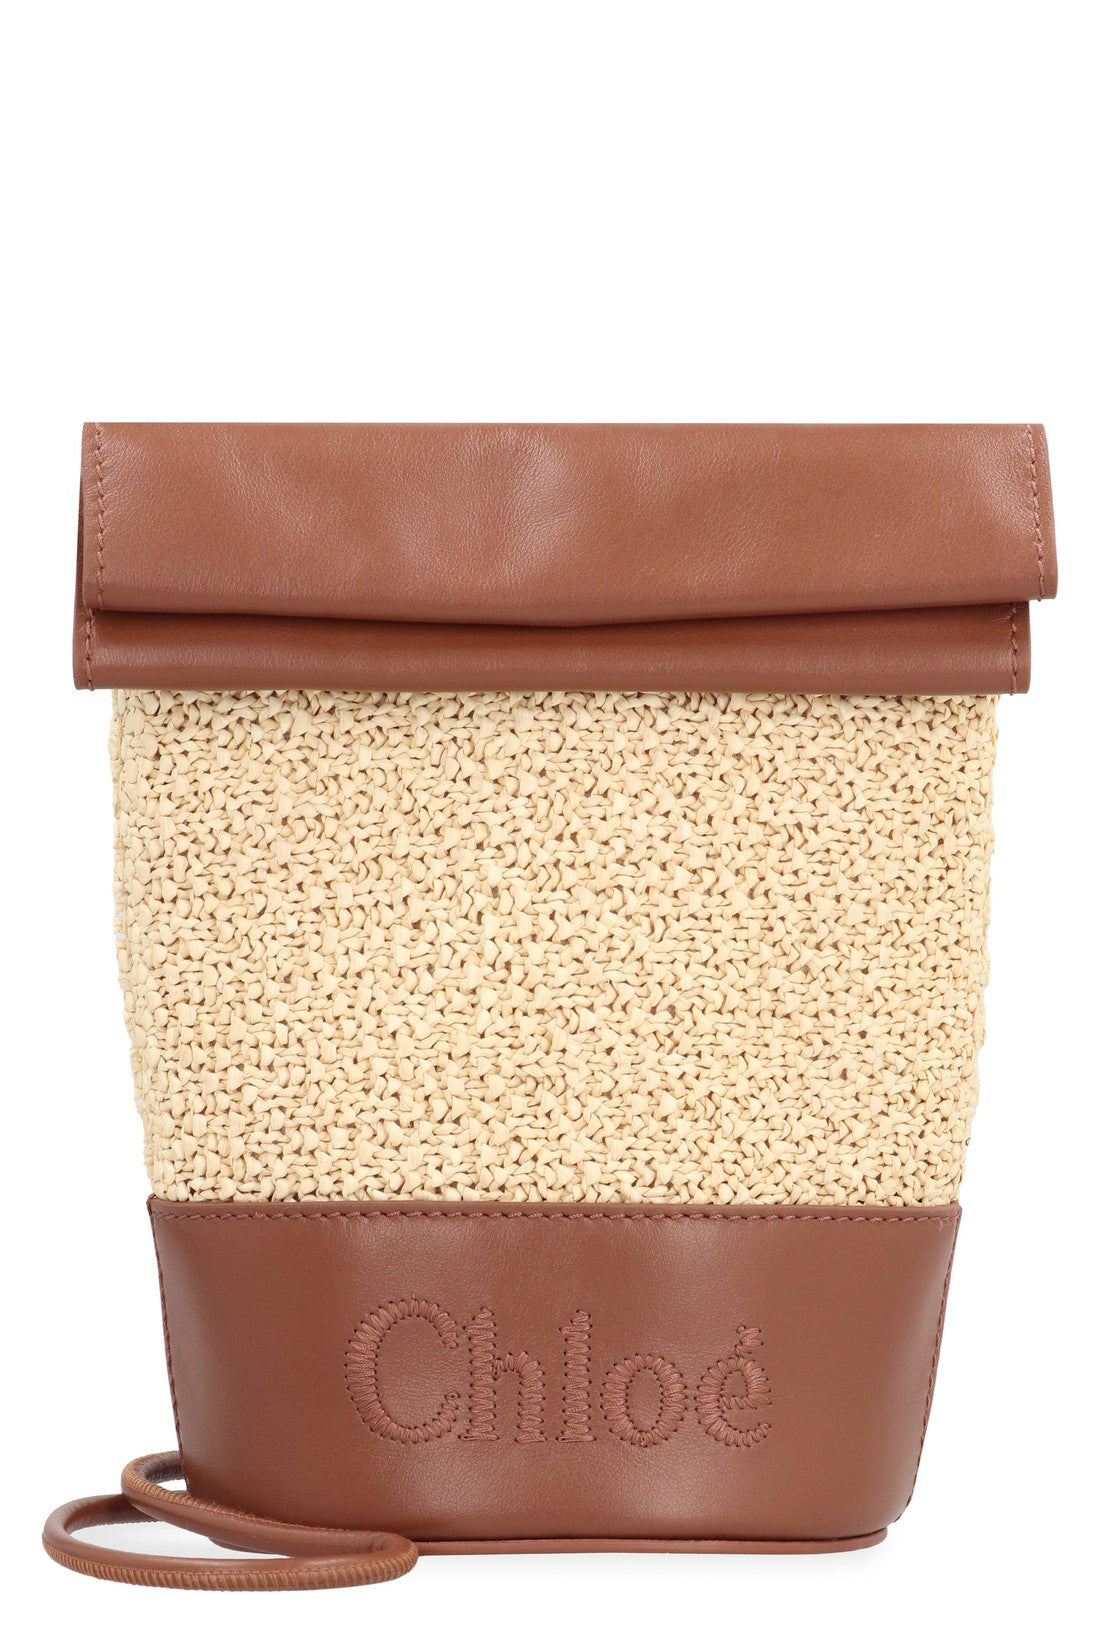 Chloé-OUTLET-SALE-Sense Bucket bag-ARCHIVIST